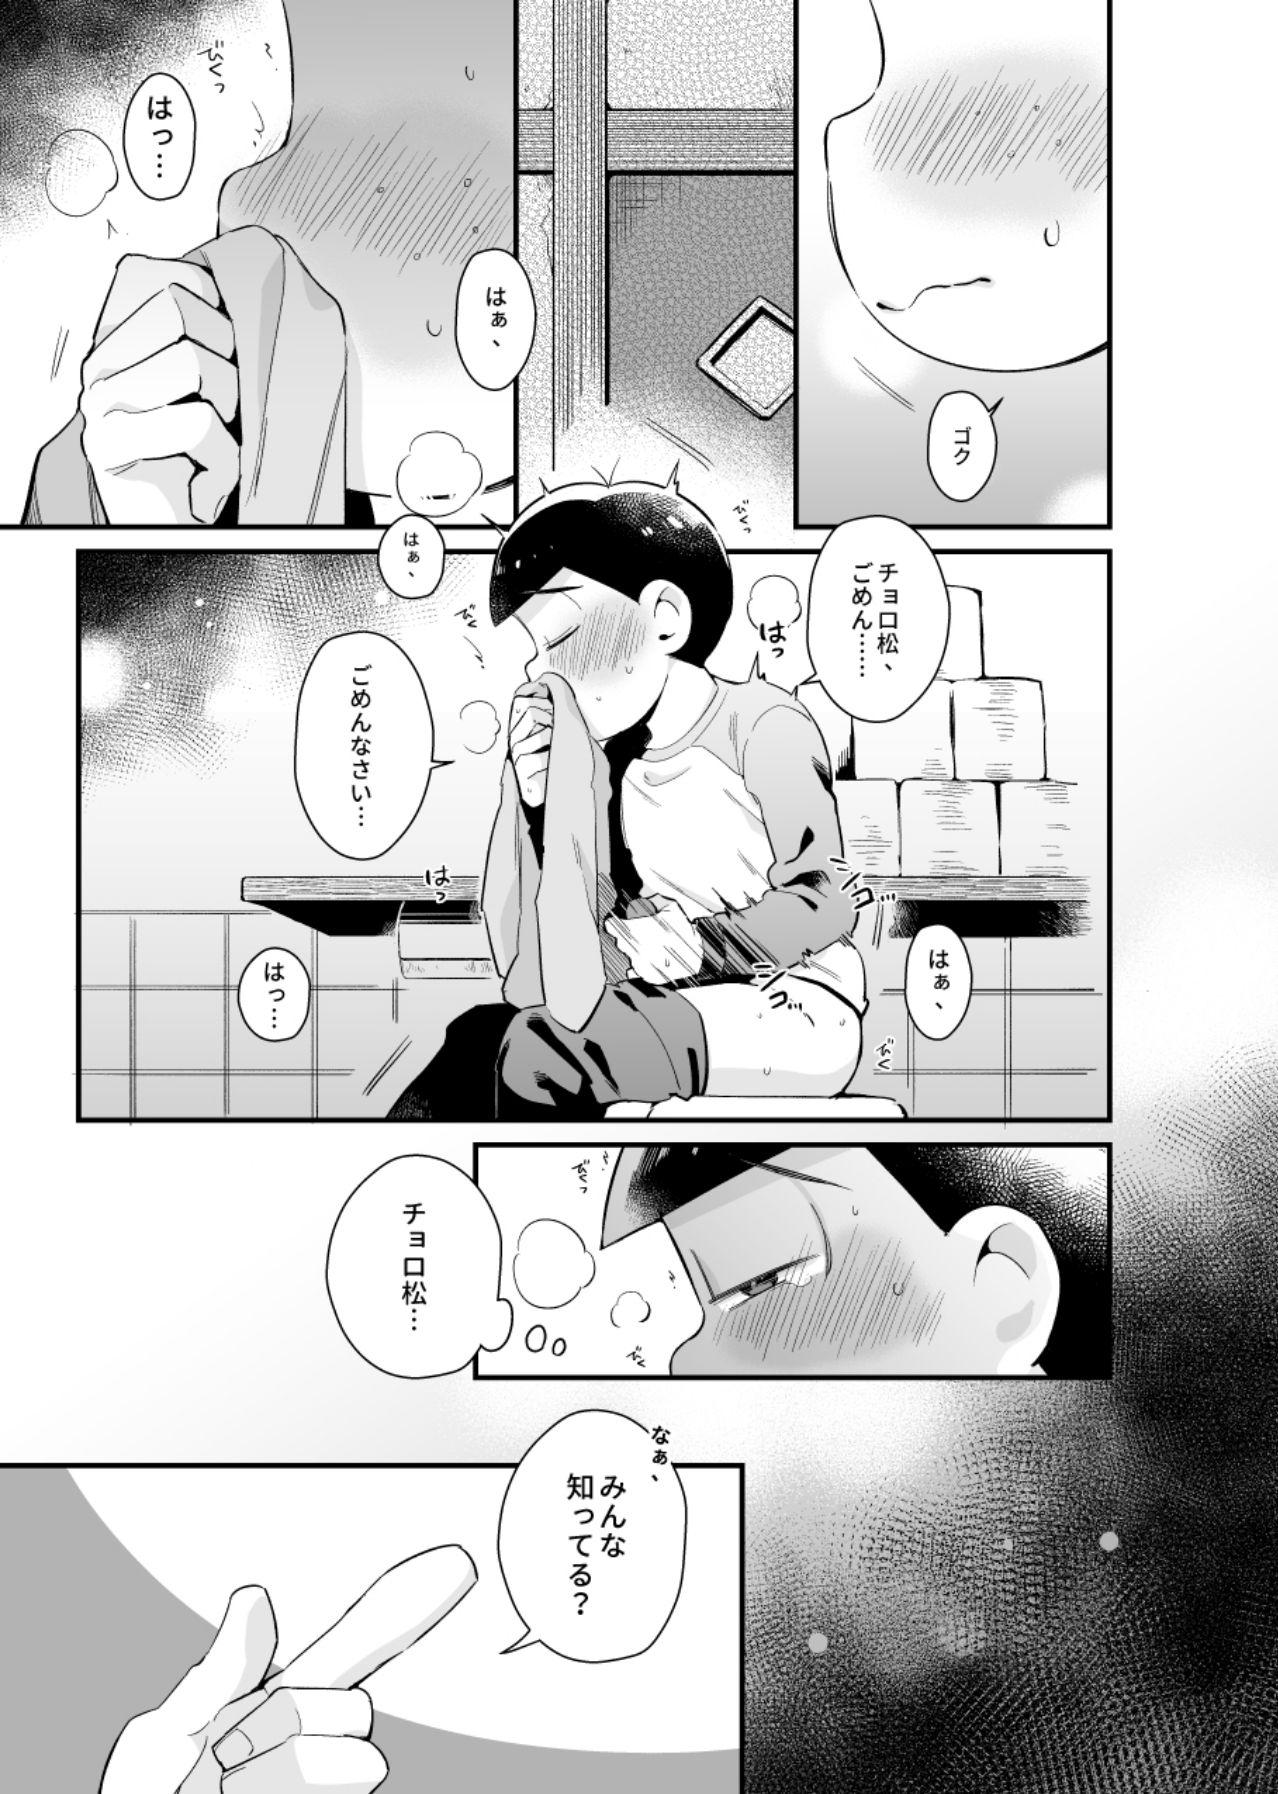 Hermana Bokutachi no shishunki - Osomatsu san Menage - Page 8